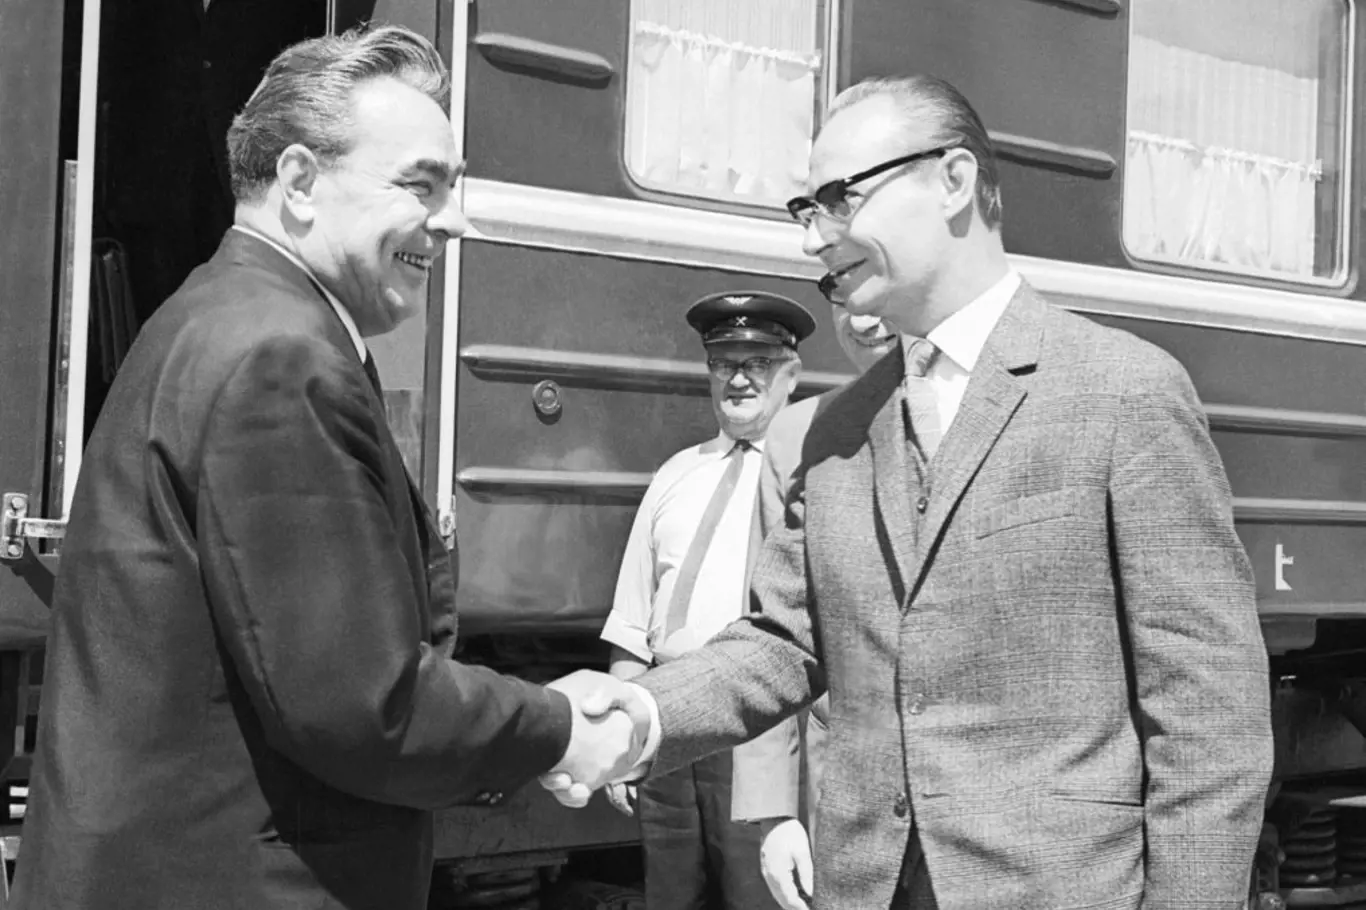 Jednání v Čierné nad Tisou získalo přízvisko "vagónové jednání" podle vládního vlaku sovětské delegace